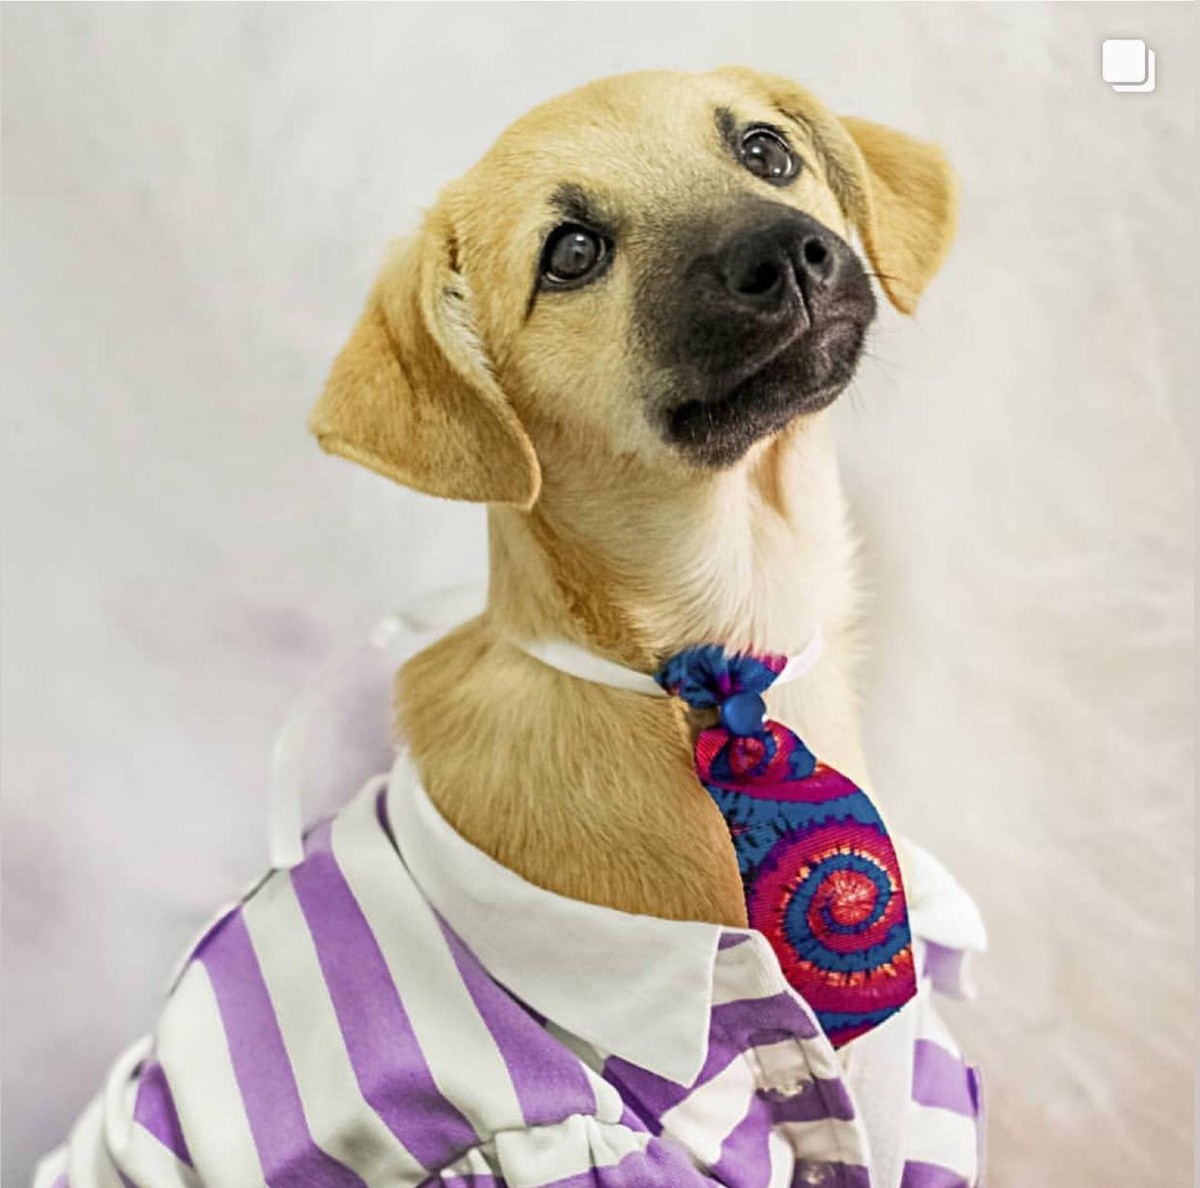 Top models: cães de abrigo ganham ensaio fotográfico para incentivar adoção no DF | Distrito Federal – [Blog GigaOutlet]